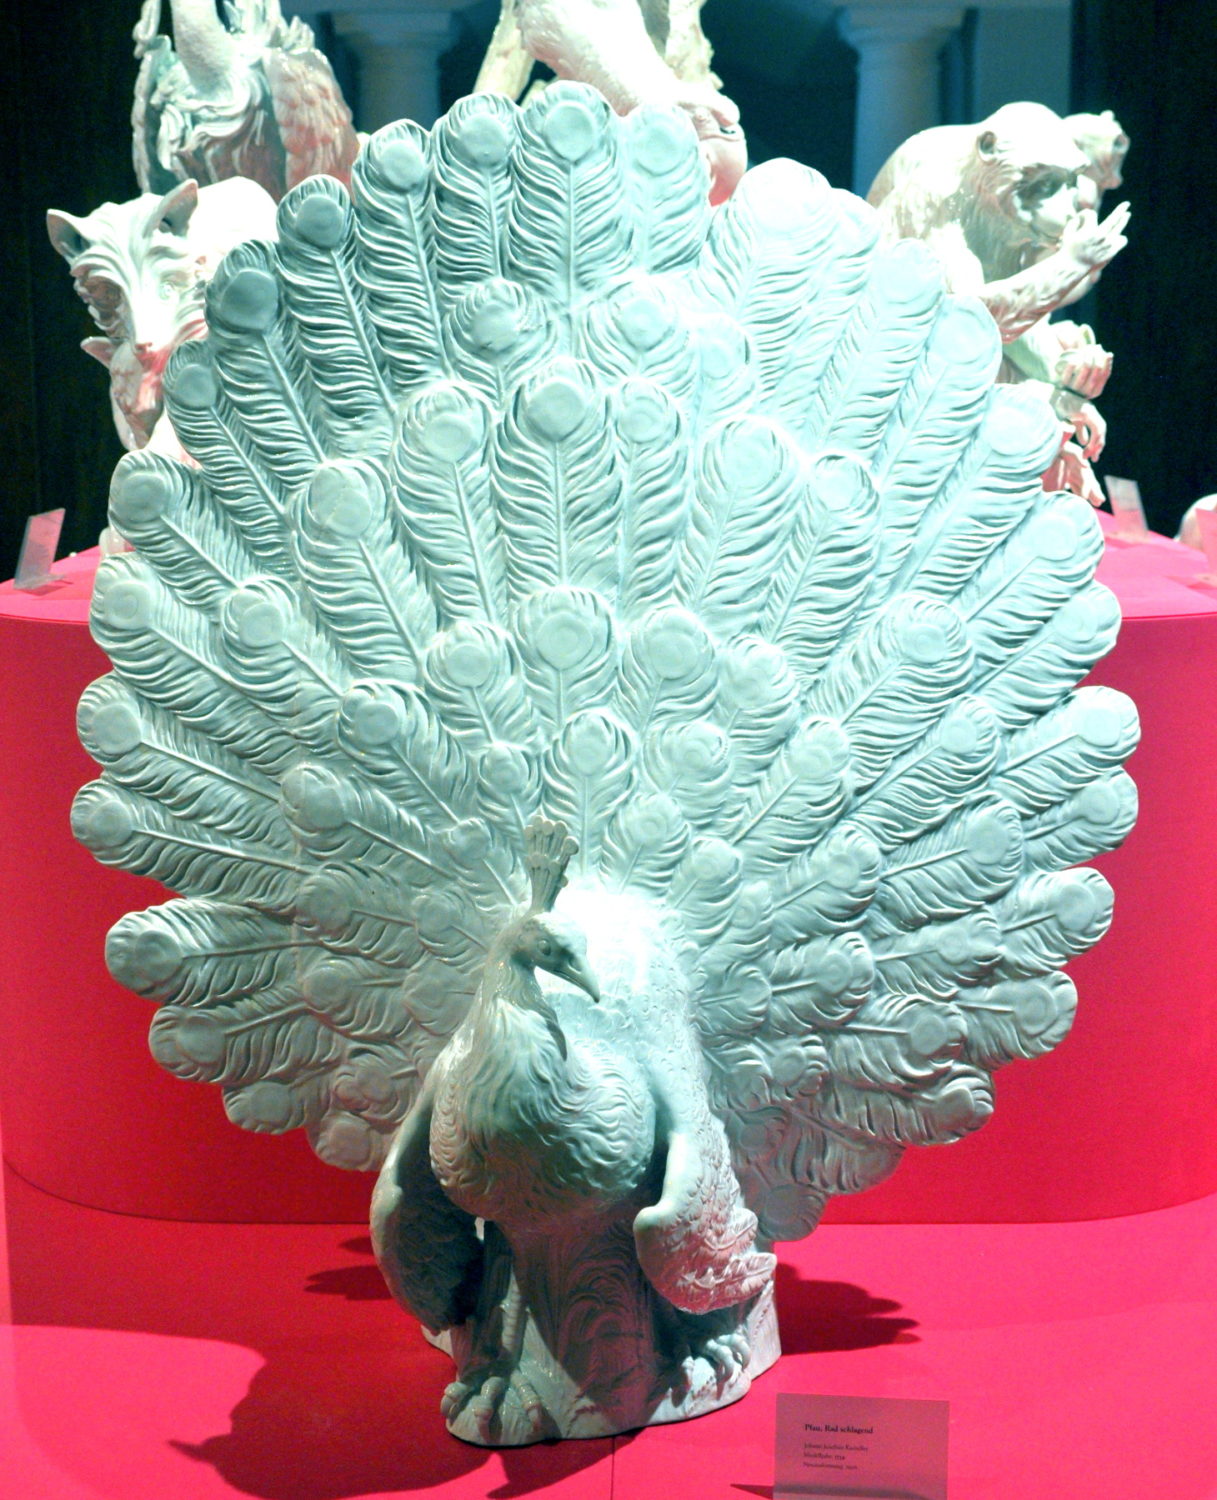 Manufakturen-Blog: ...und das Original: Porzellan-Pfau in der Dauerausstellung der Porzellanmanufaktur Meissen (Foto: Wigmar Bressel)